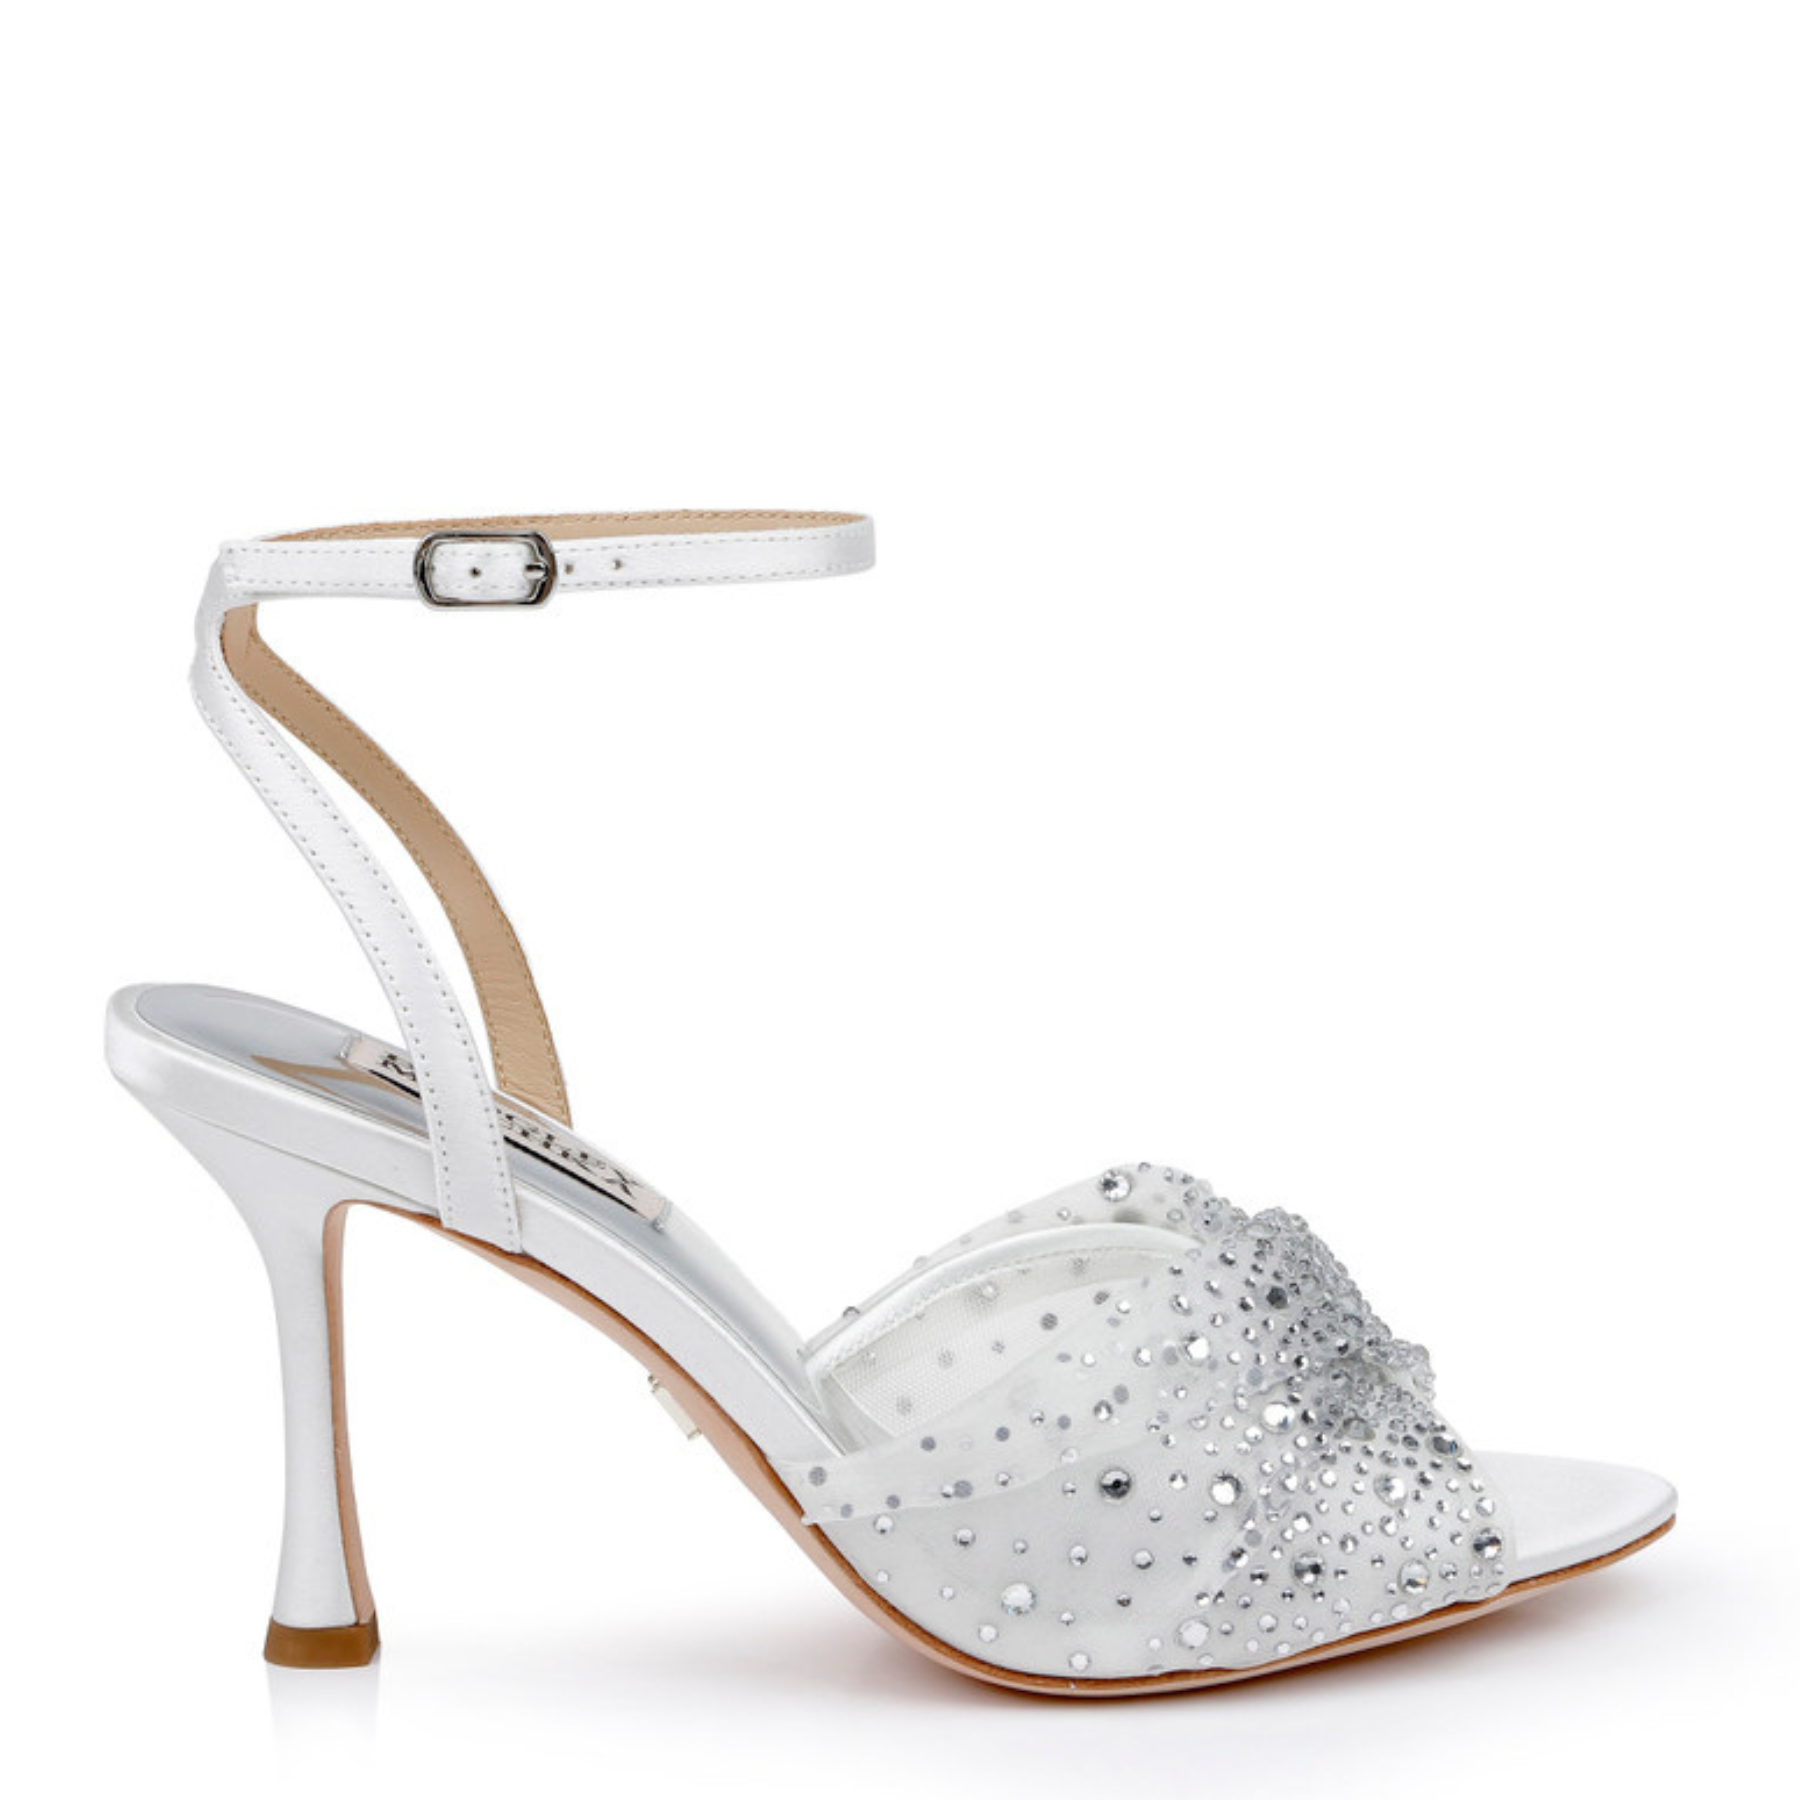 su.cheny White light ivory lace Wedding shoes flat heel wedges bridal size  5-13 | eBay